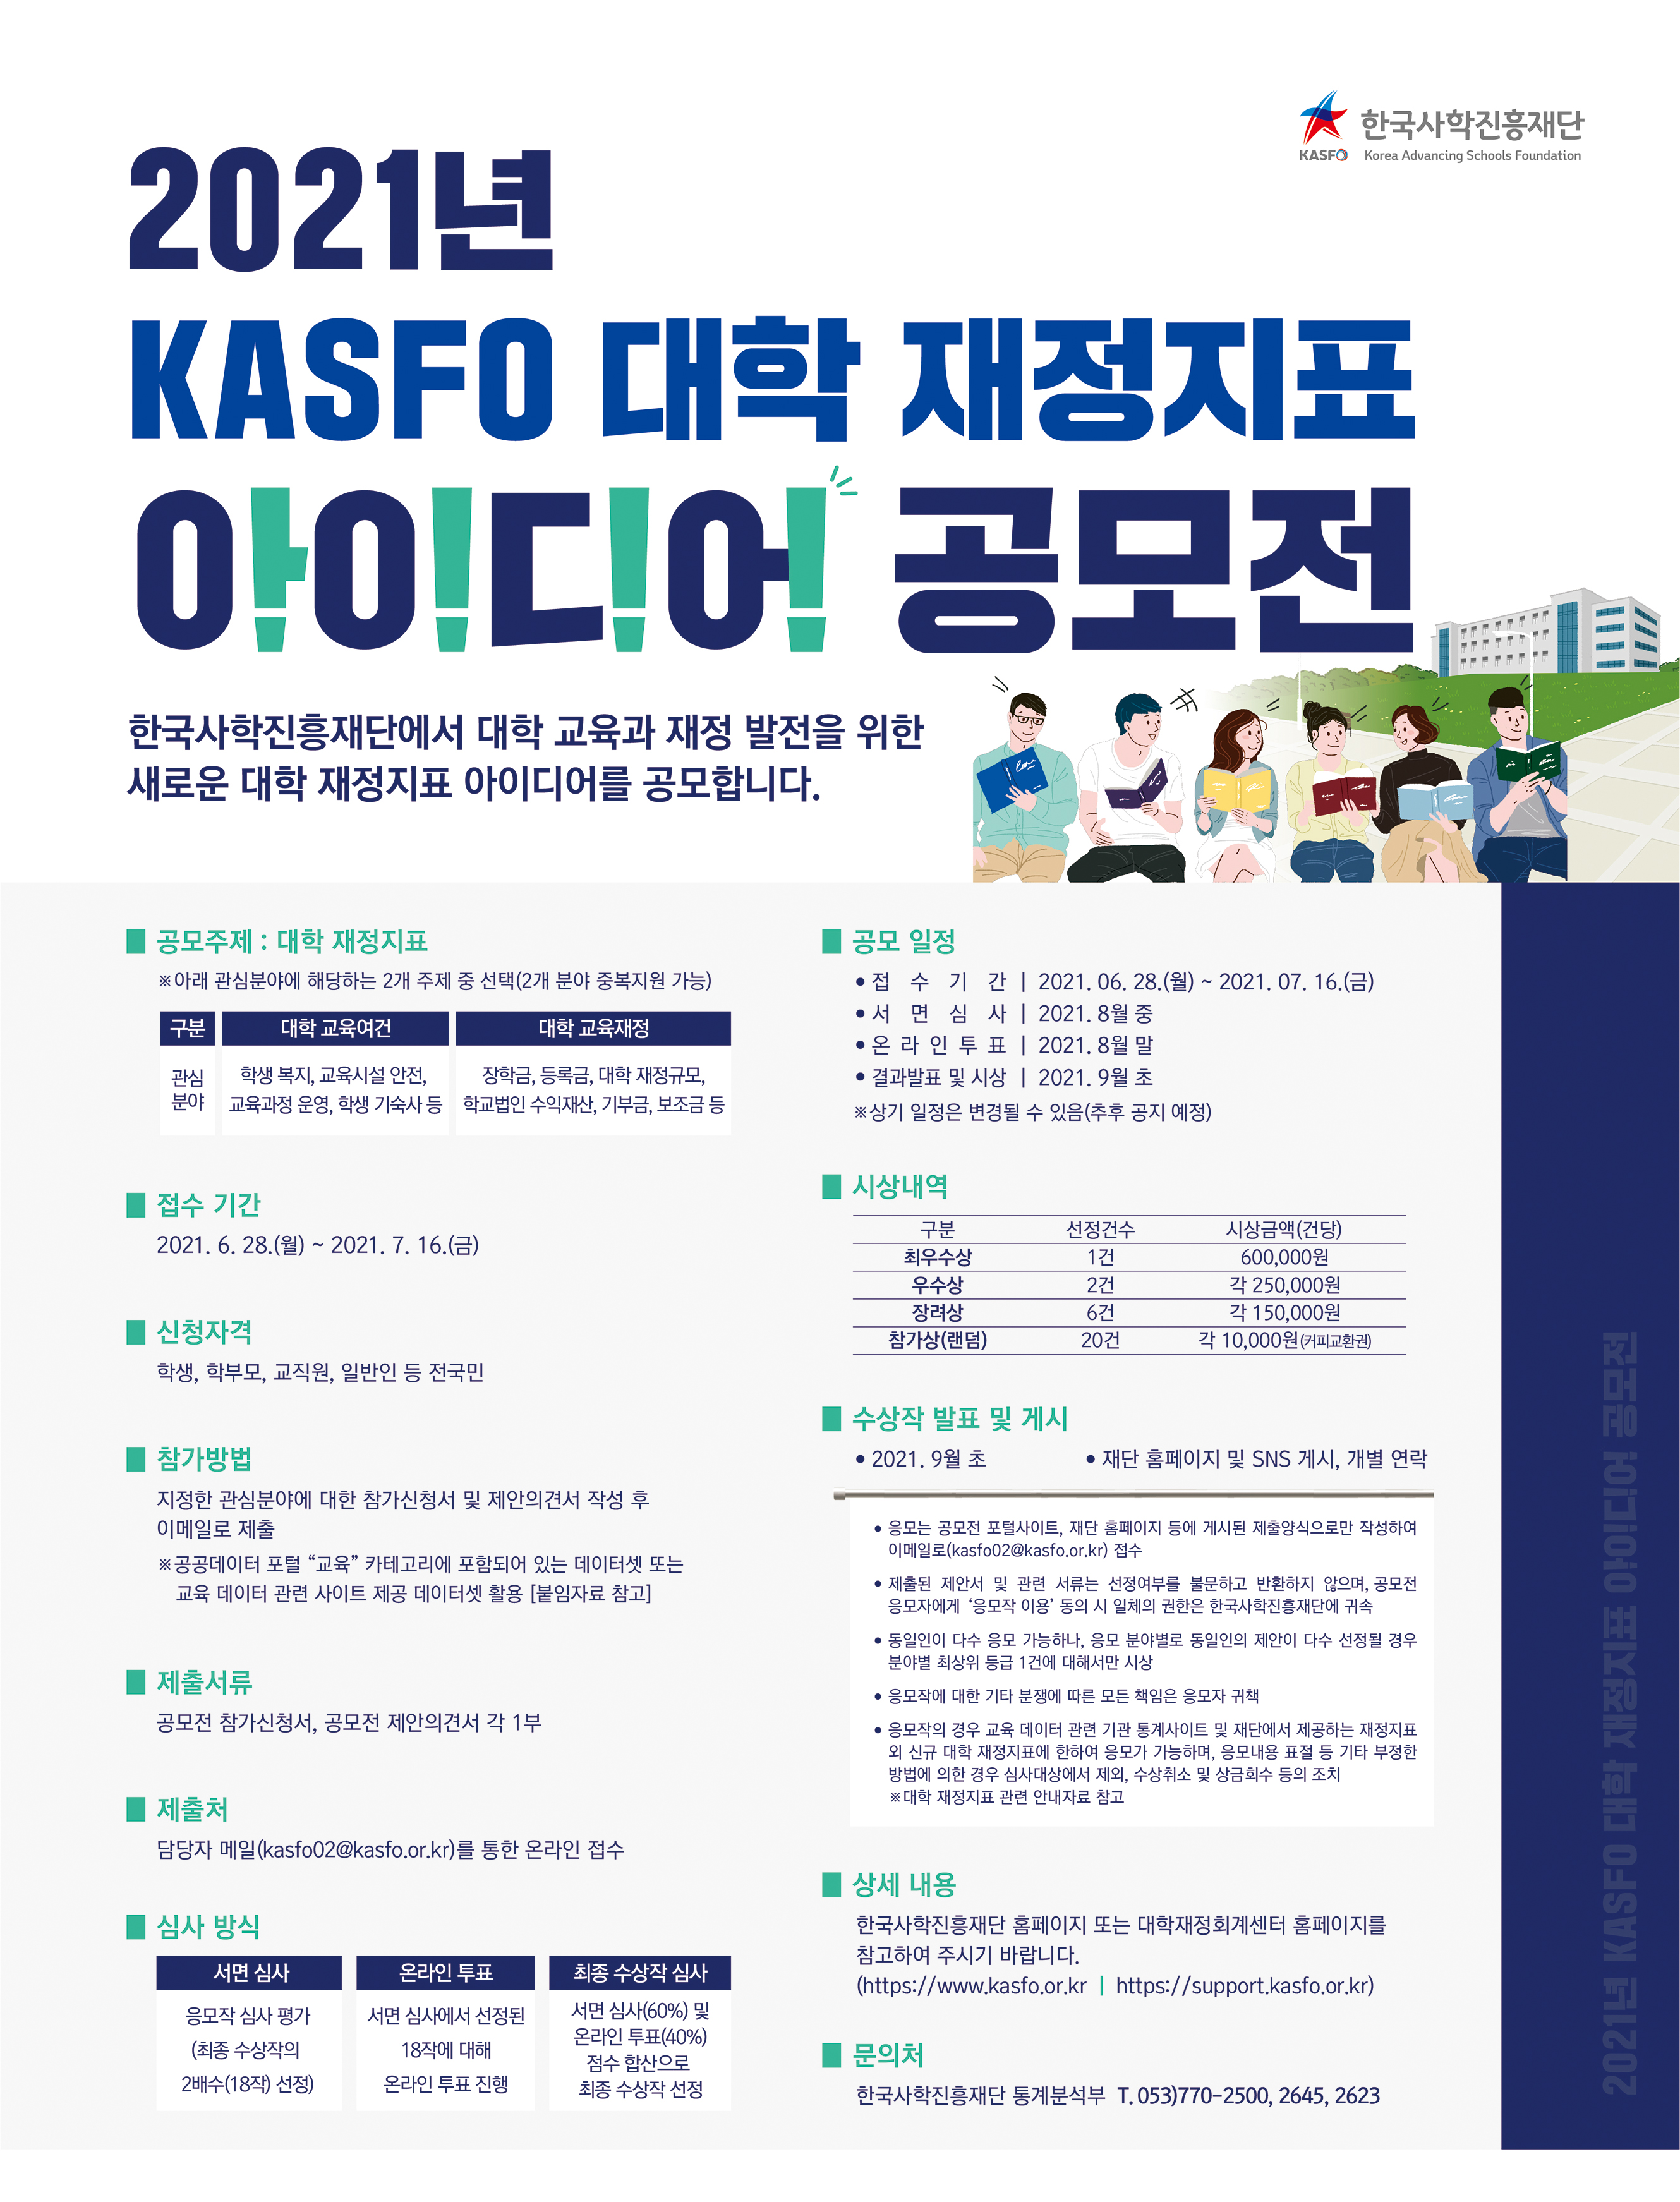 ★KASFO 대학 재정지표 아이디어 공모전 개최★